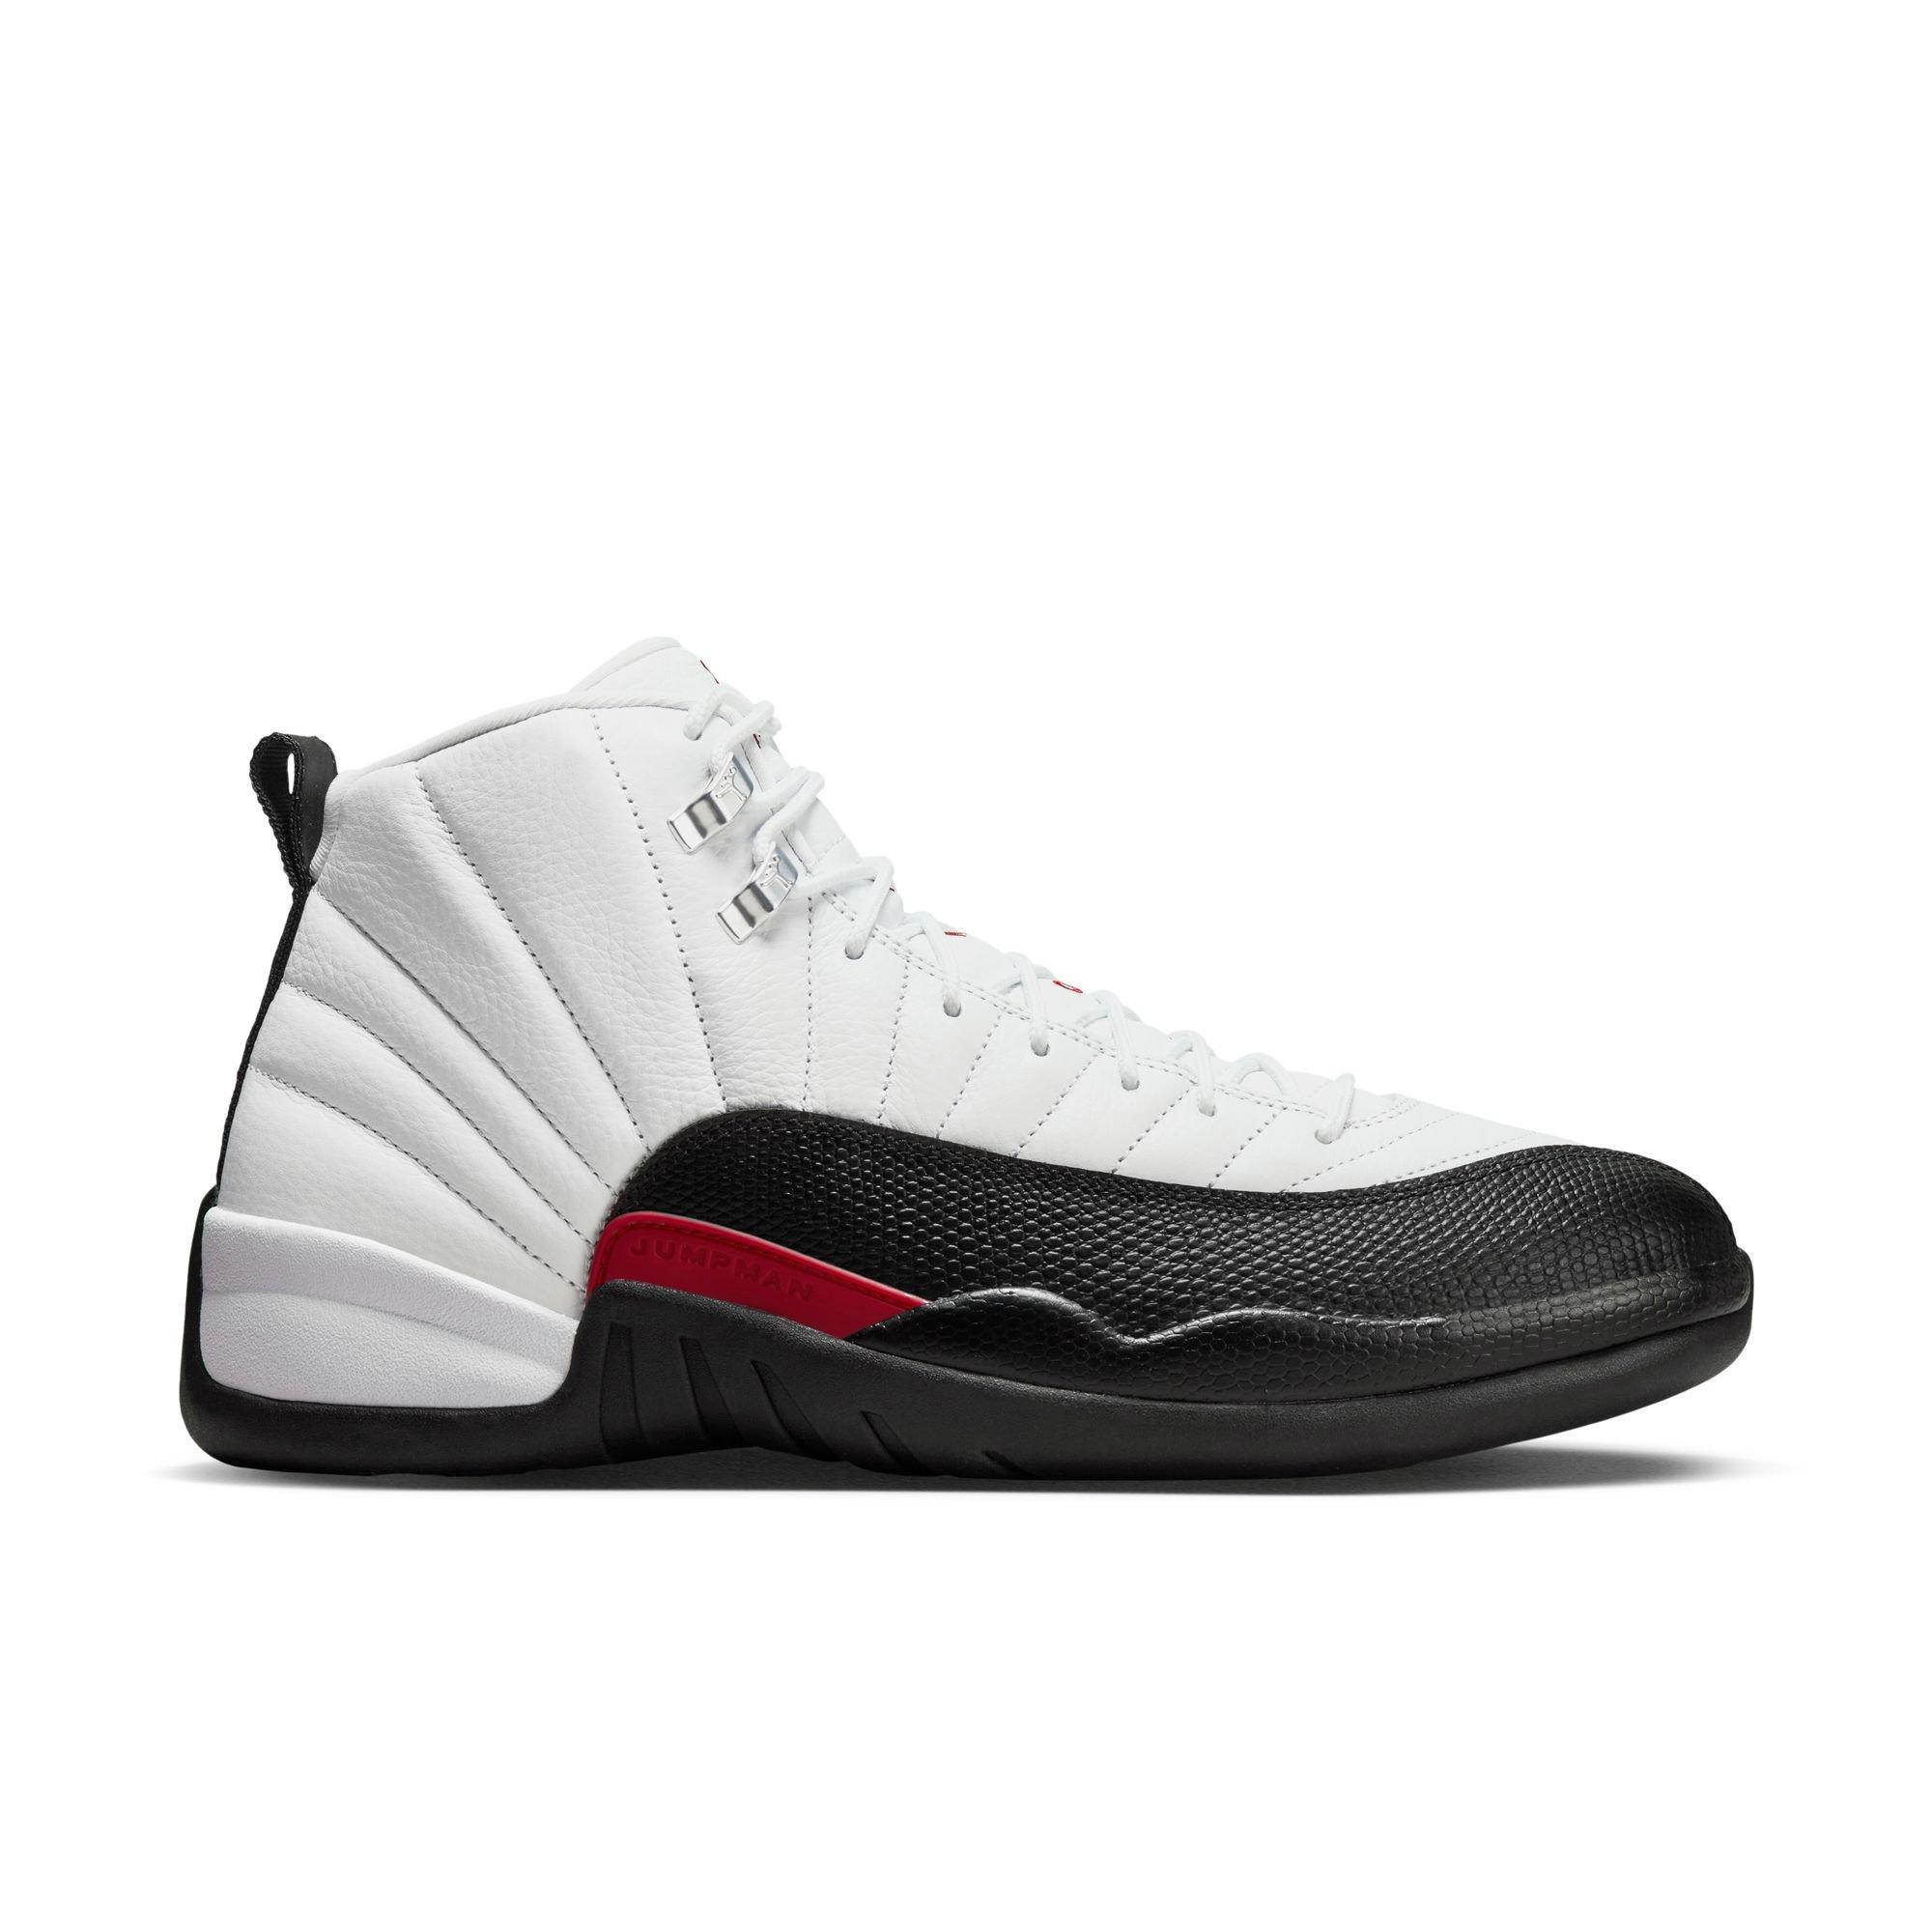 Air Jordan Shoes u0026 Sneakers - Low